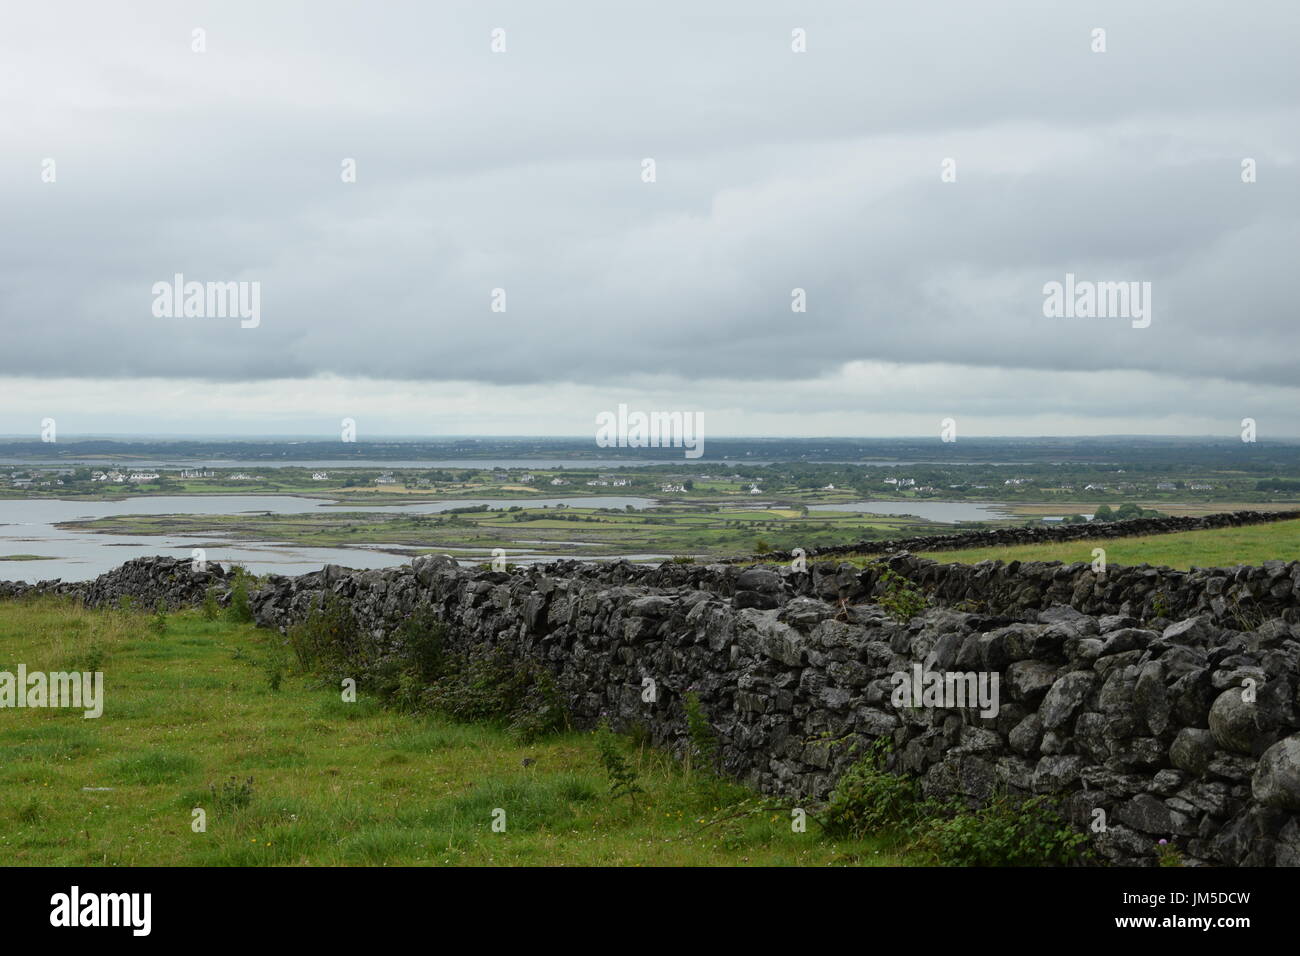 Las paredes de piedra en contra de la bahía de Galway, en el condado de Clare, al oeste de Irlanda Foto de stock